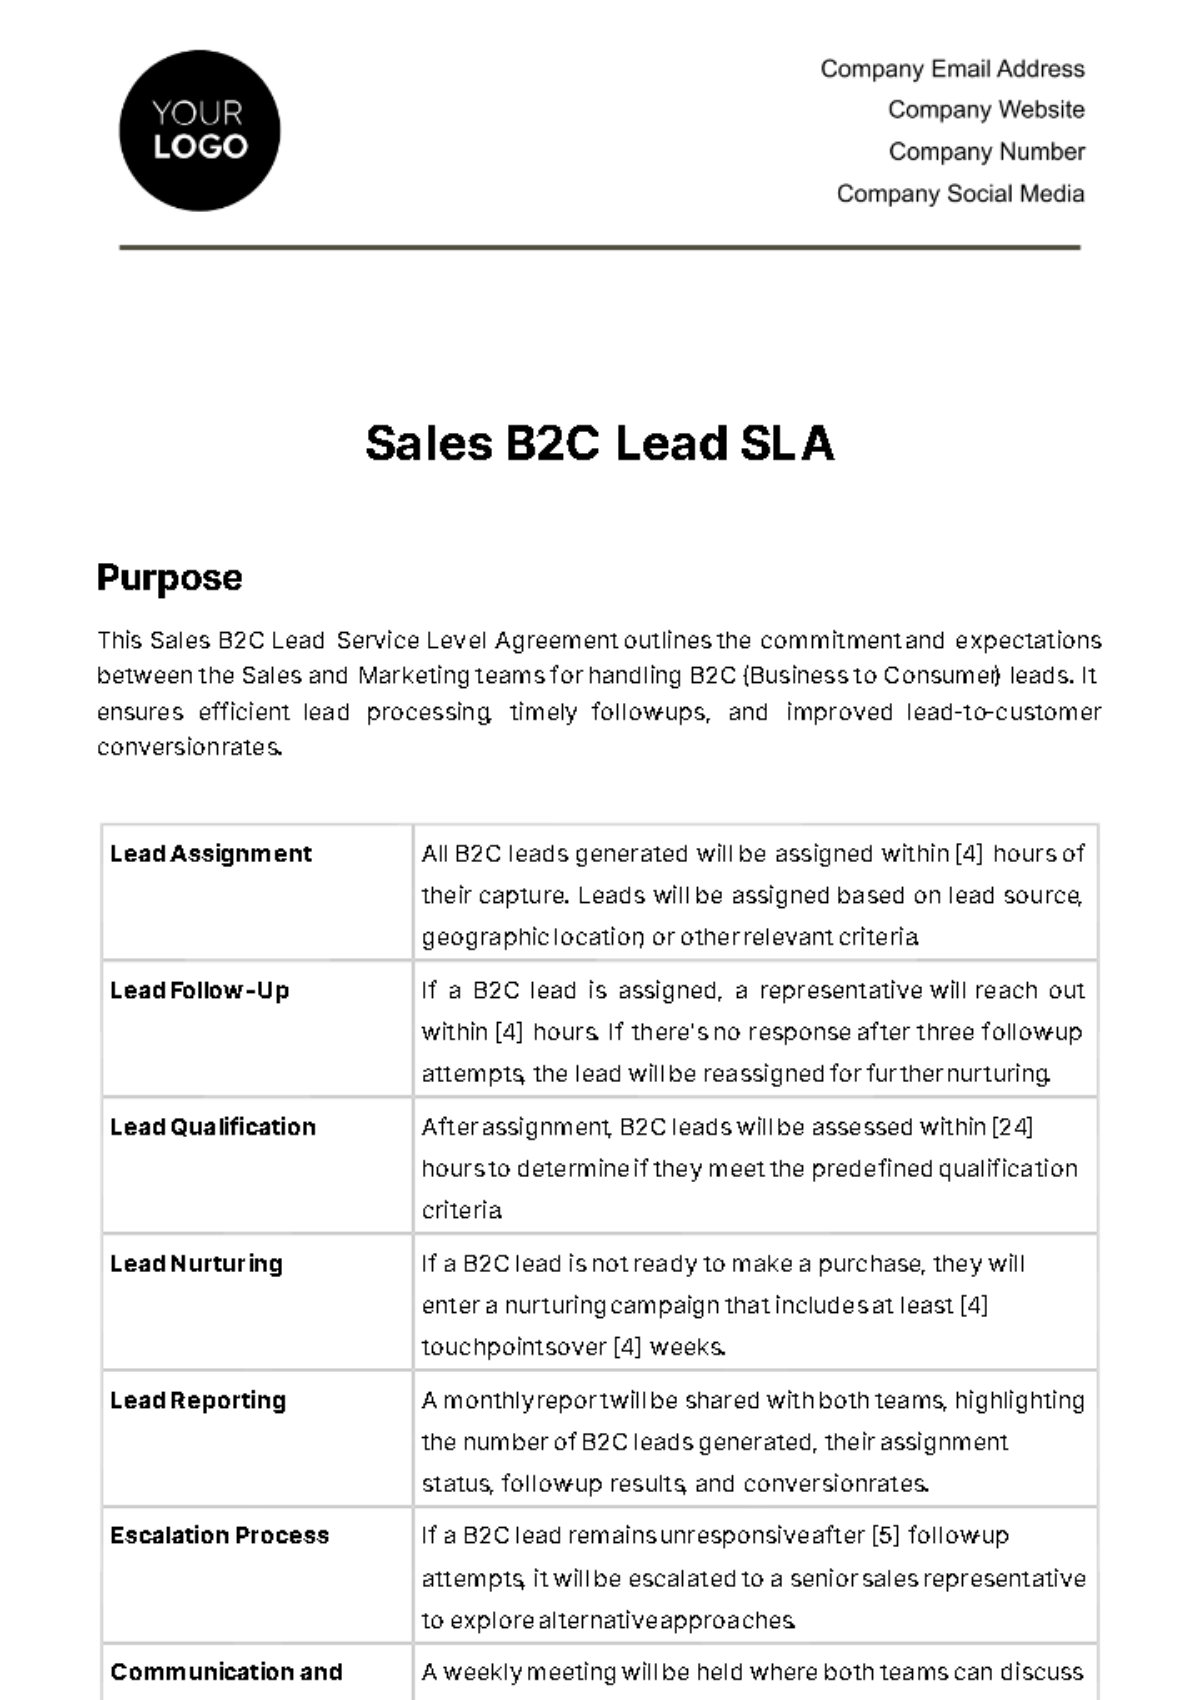 Sales B2C Lead SLA Template